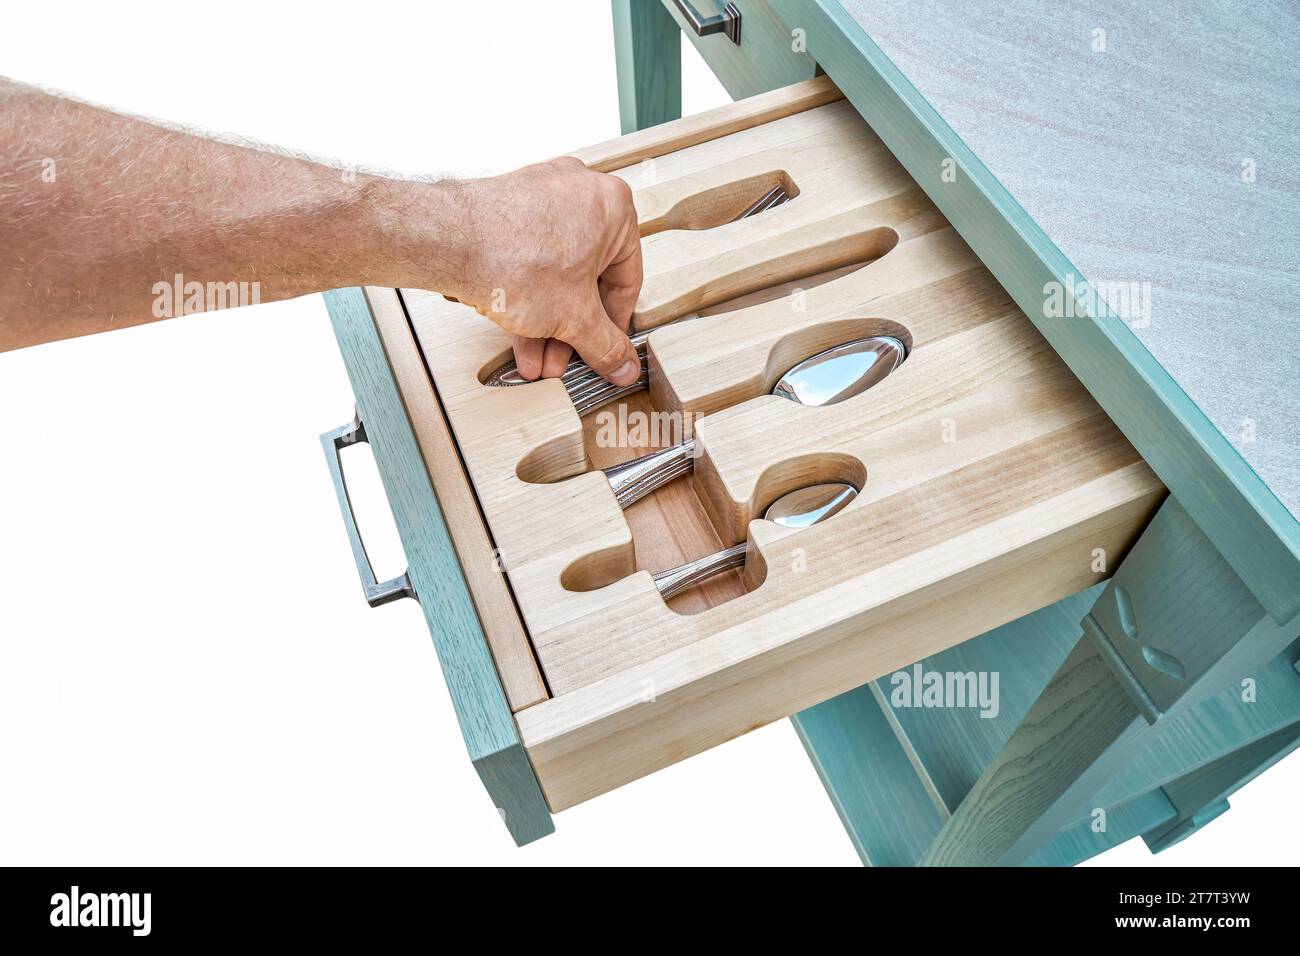 La mano del hombre pone el cuchillo en el tenedor de madera anhelado en el cajón del gabinete de cocina de cerca. La persona toma cubiertos de la bandeja de almacenamiento. Muebles para el hogar Foto de stock